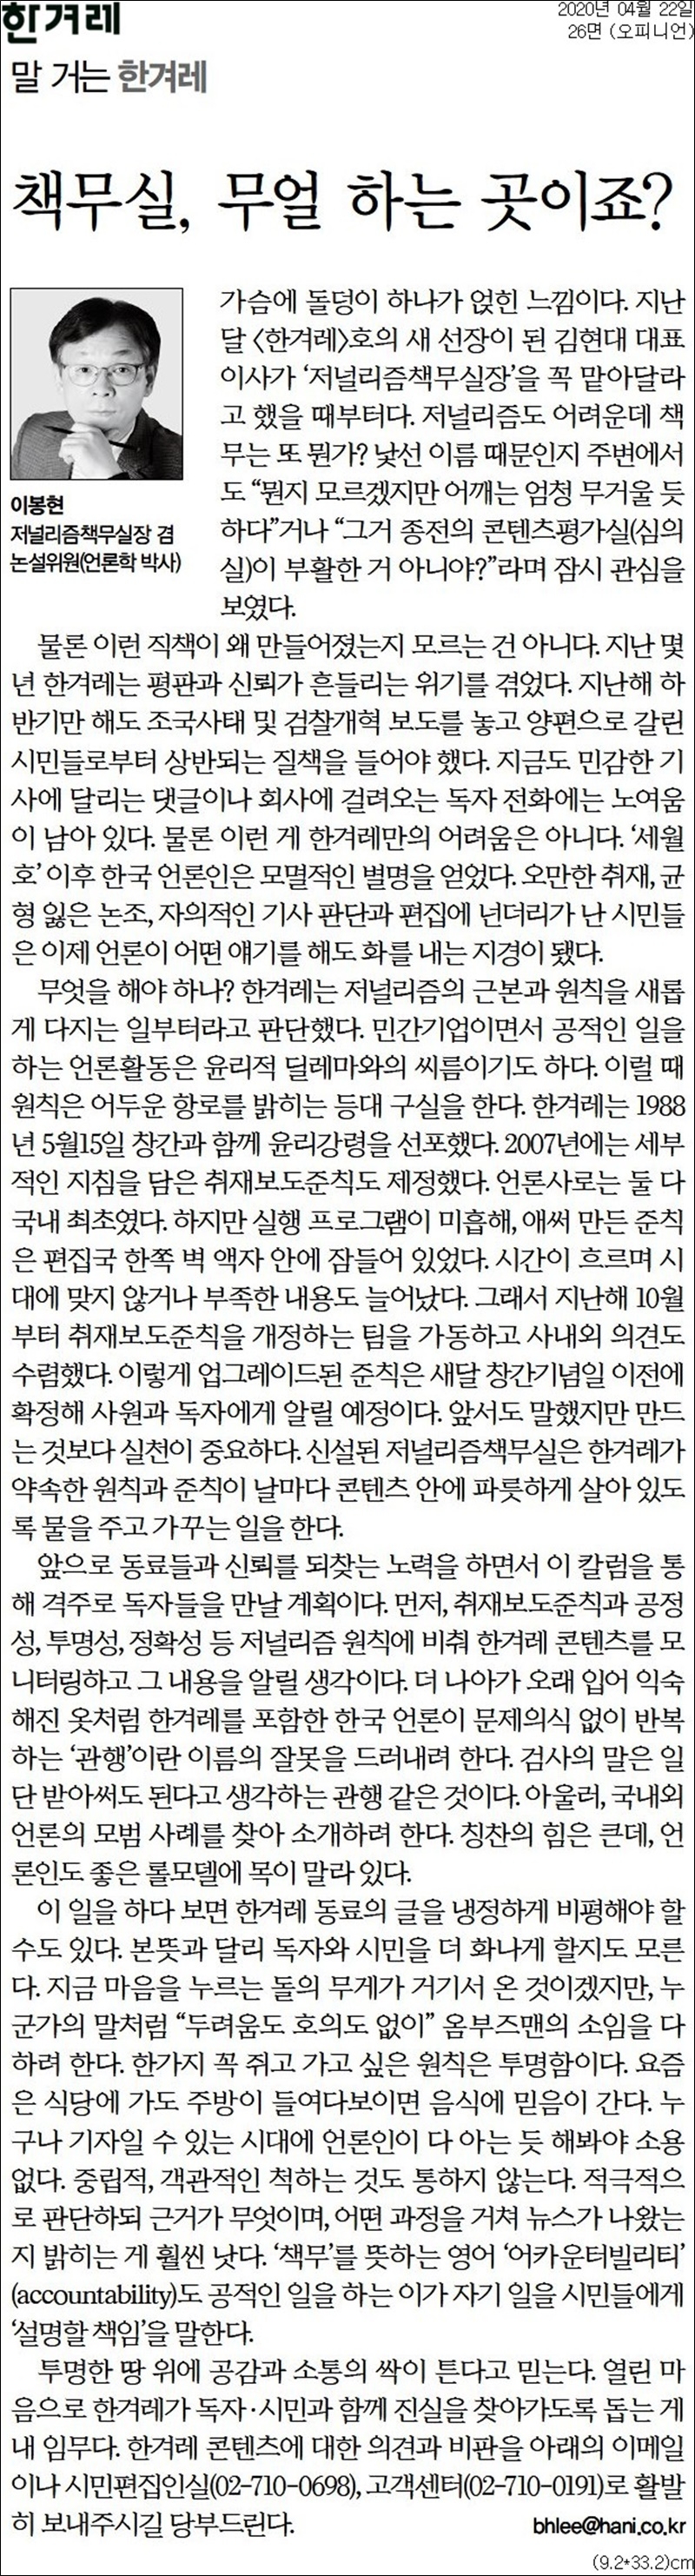 ▲지난 달 22일 보도된 한겨레 칼럼.